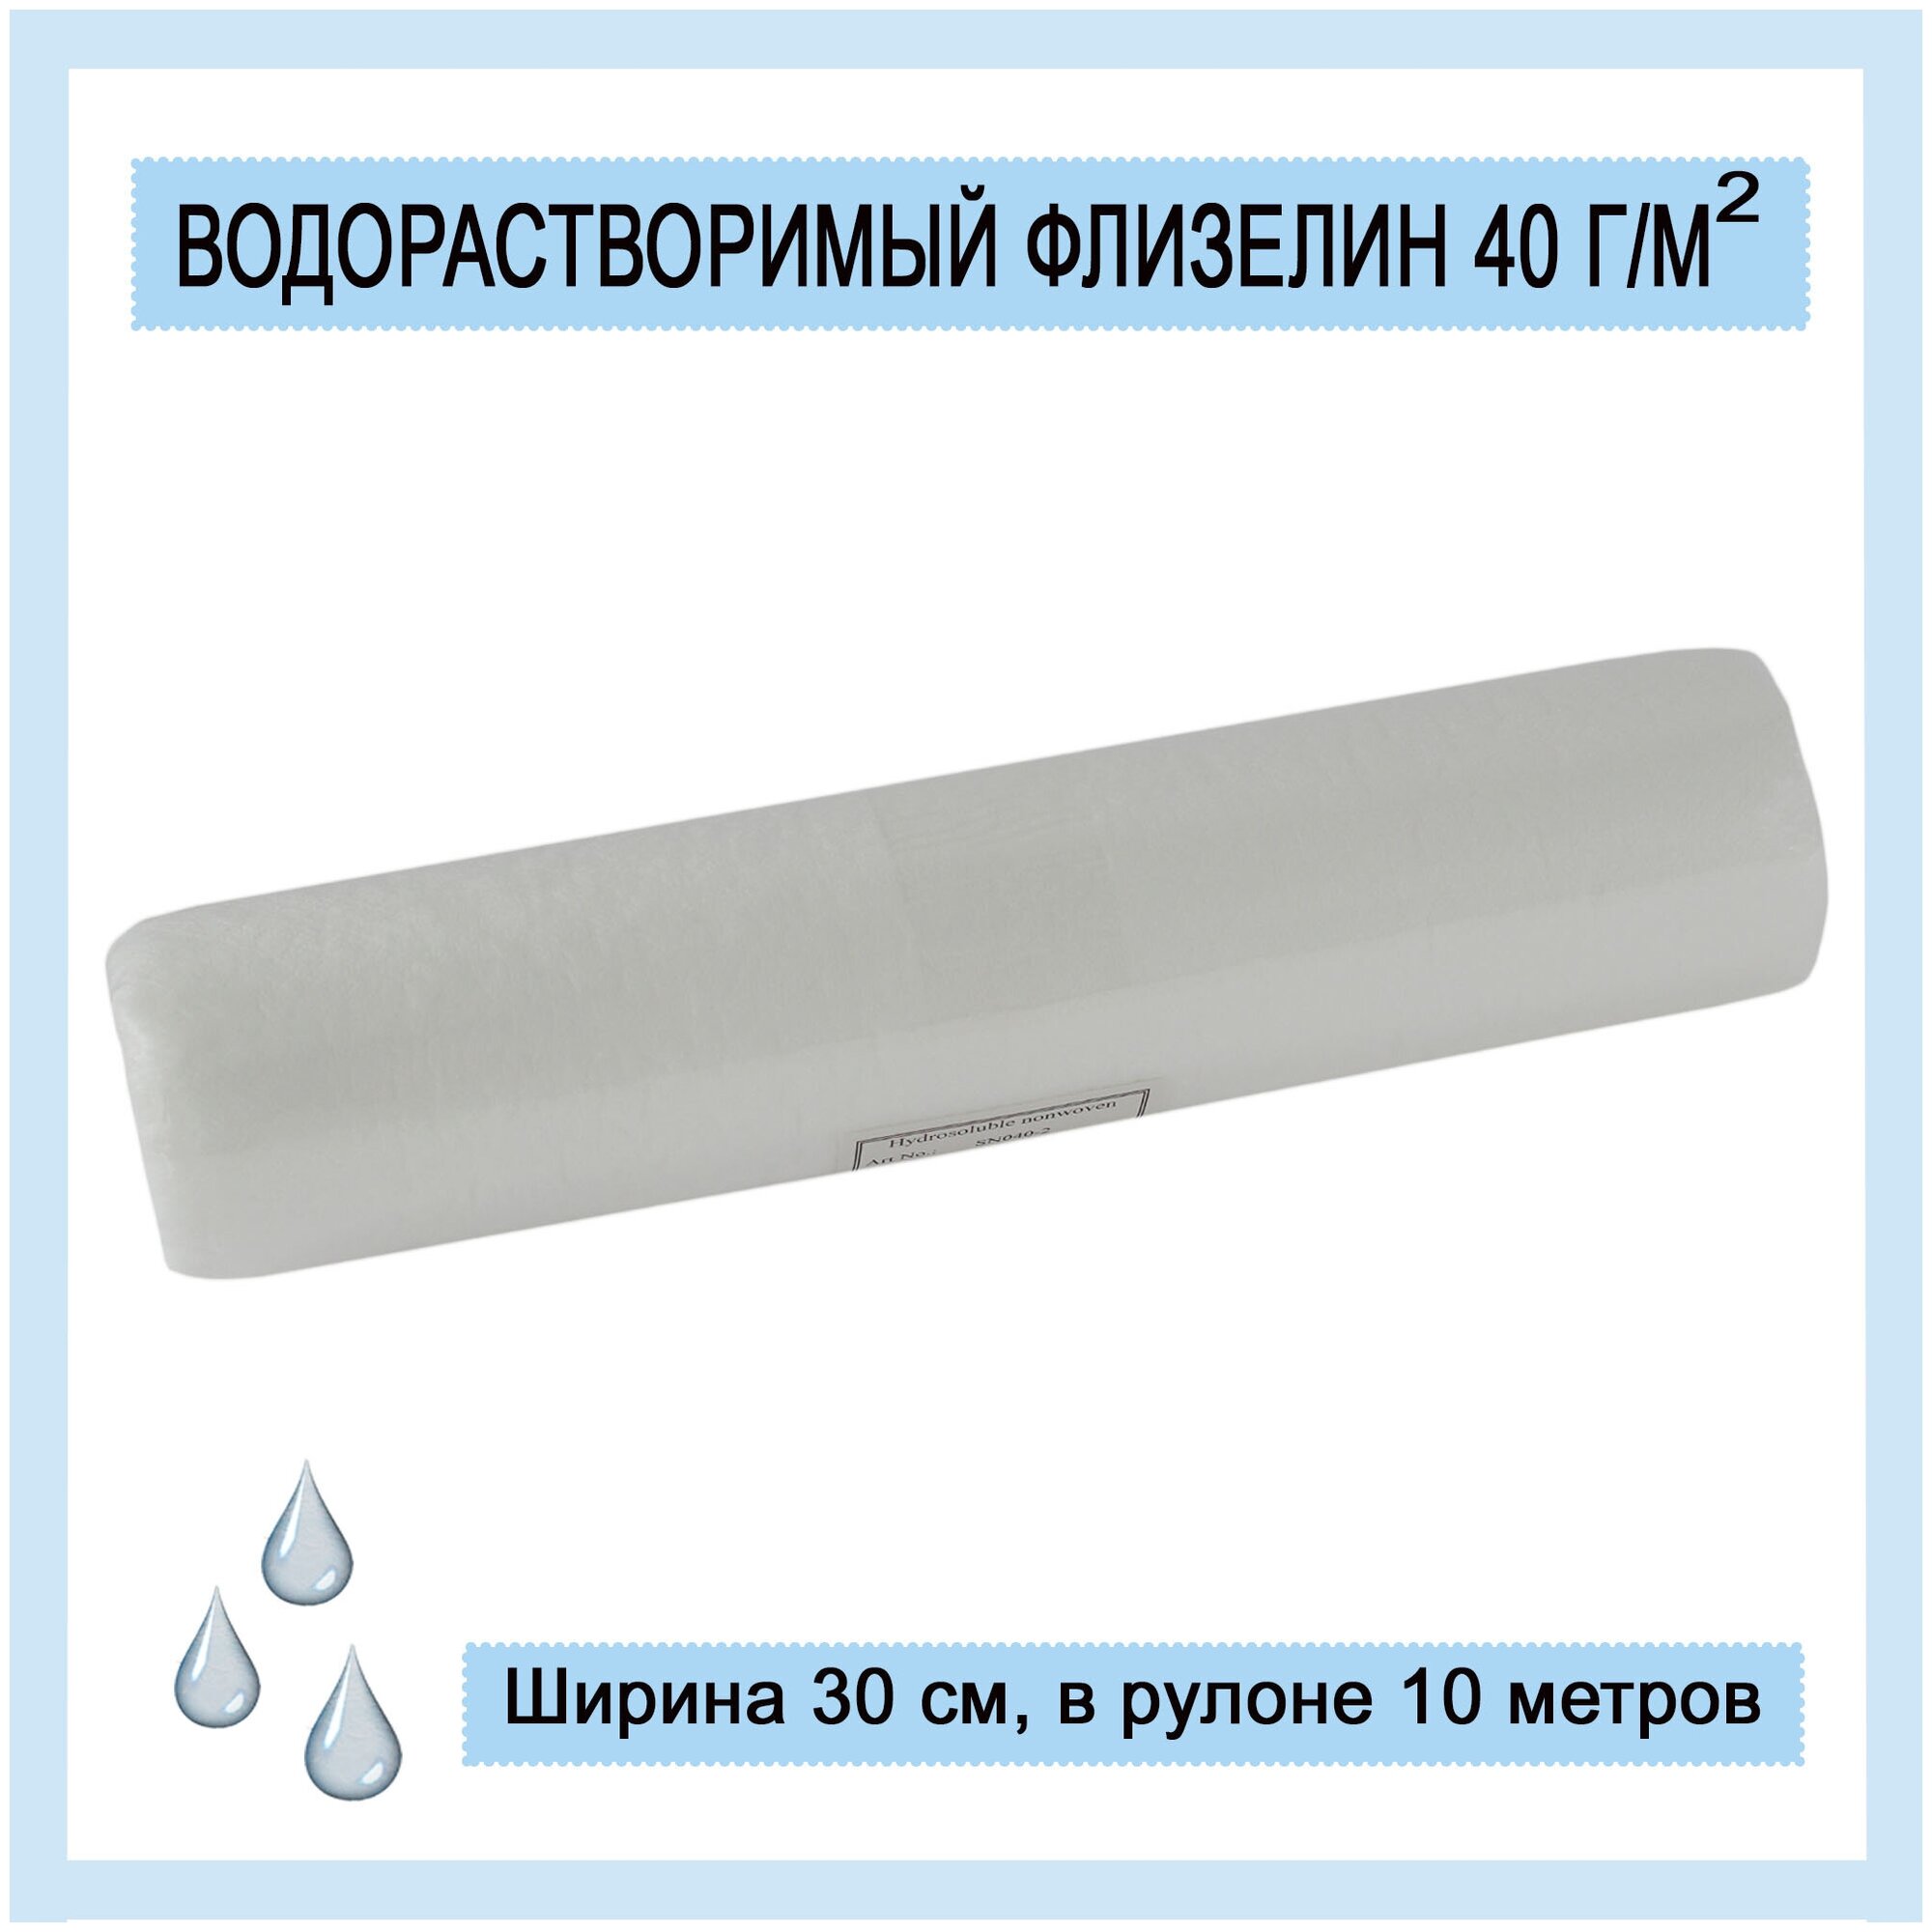 Водорастворимый флизелин 40 г/м2, рулон 30 см х 10 м, белый